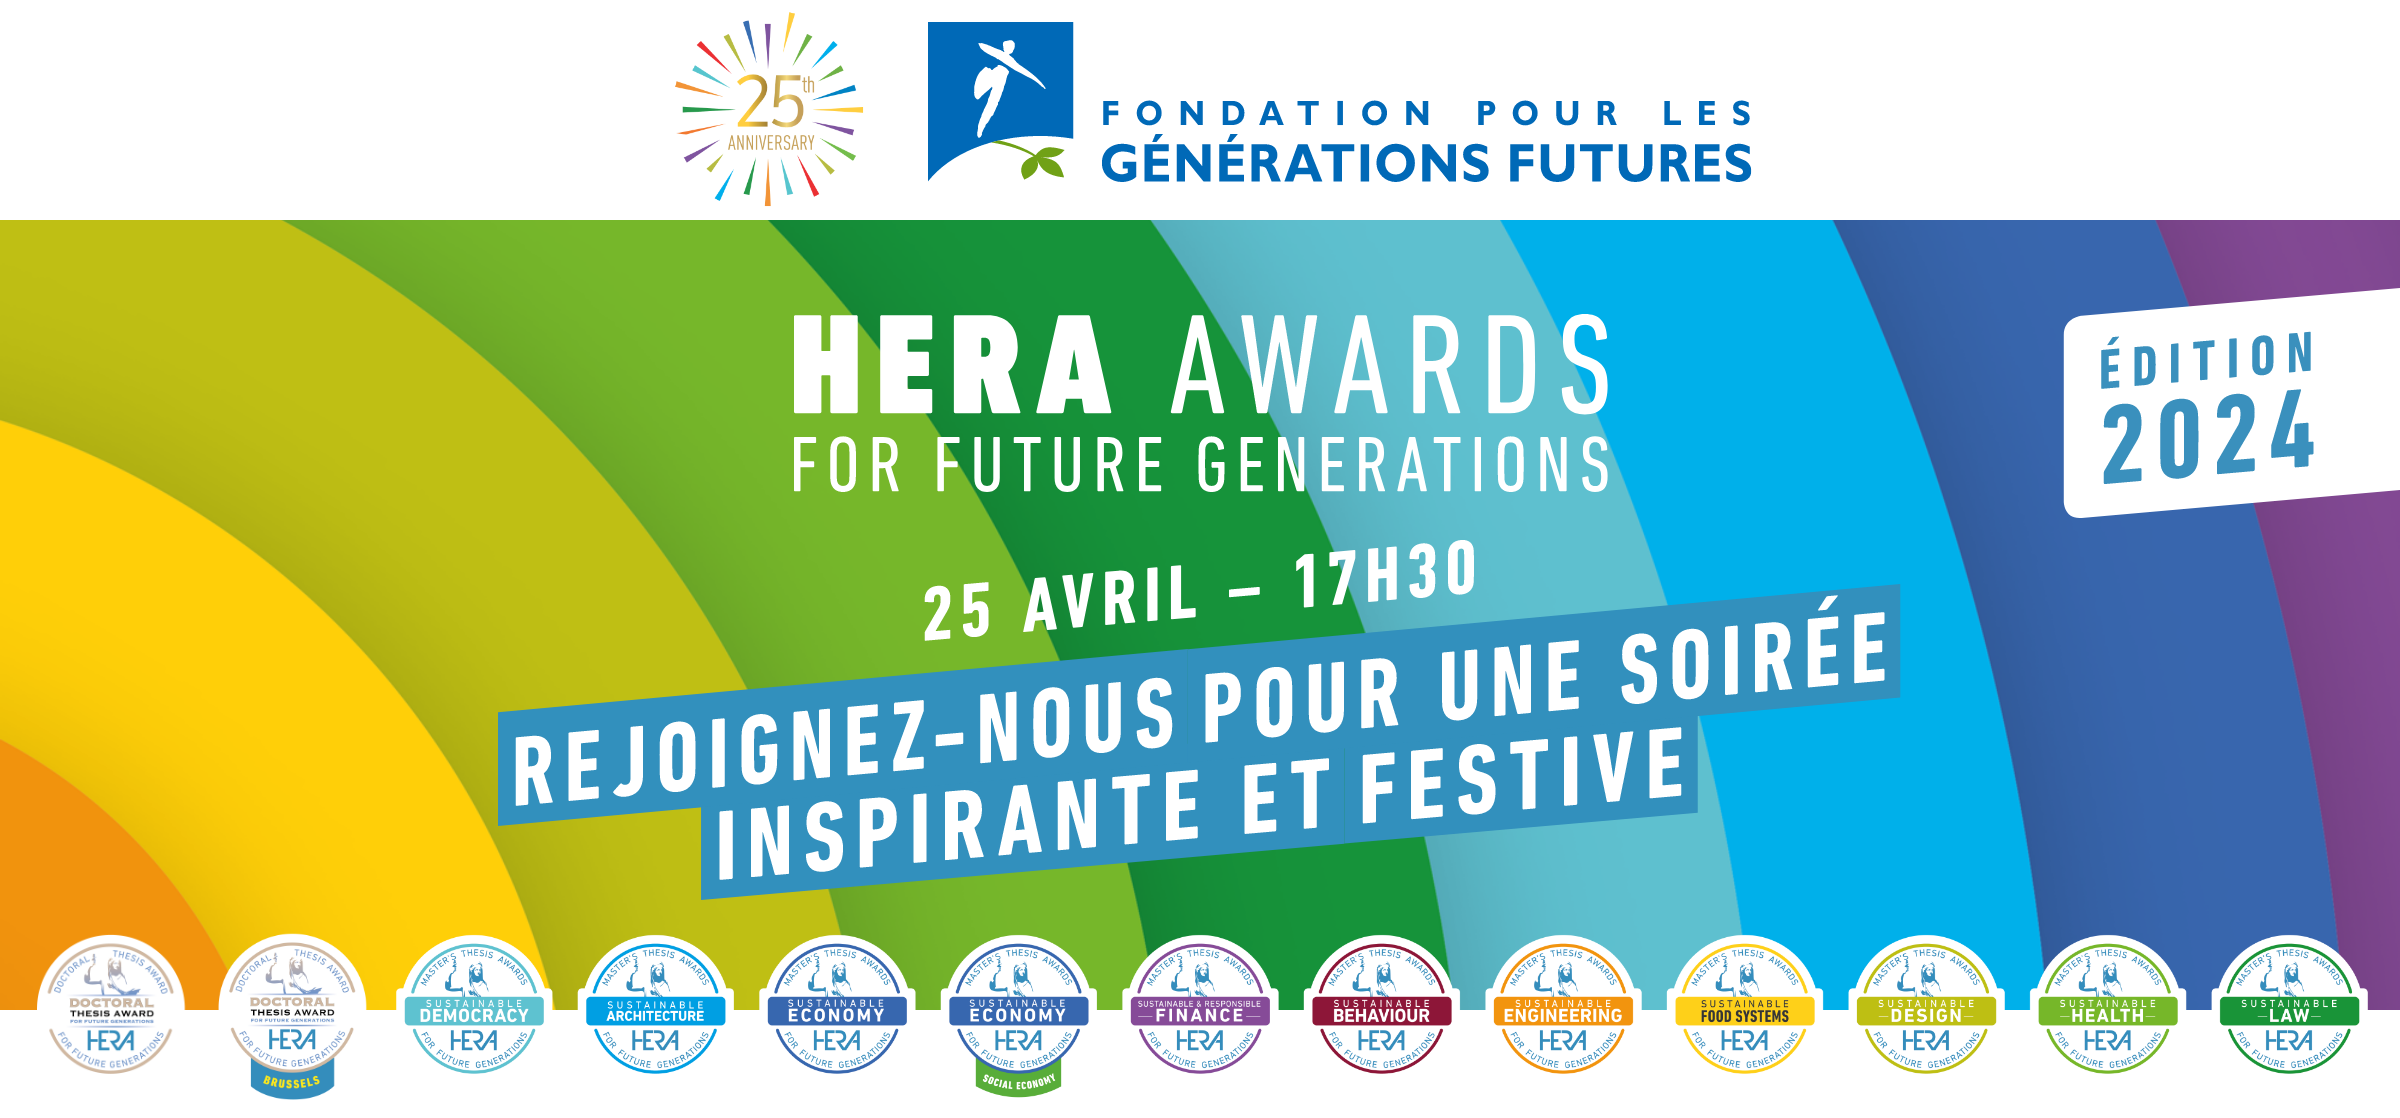 Ceremonie de remise des prix HERA Awards 2024 - des jeunes qui pensent un monde plus soutenable